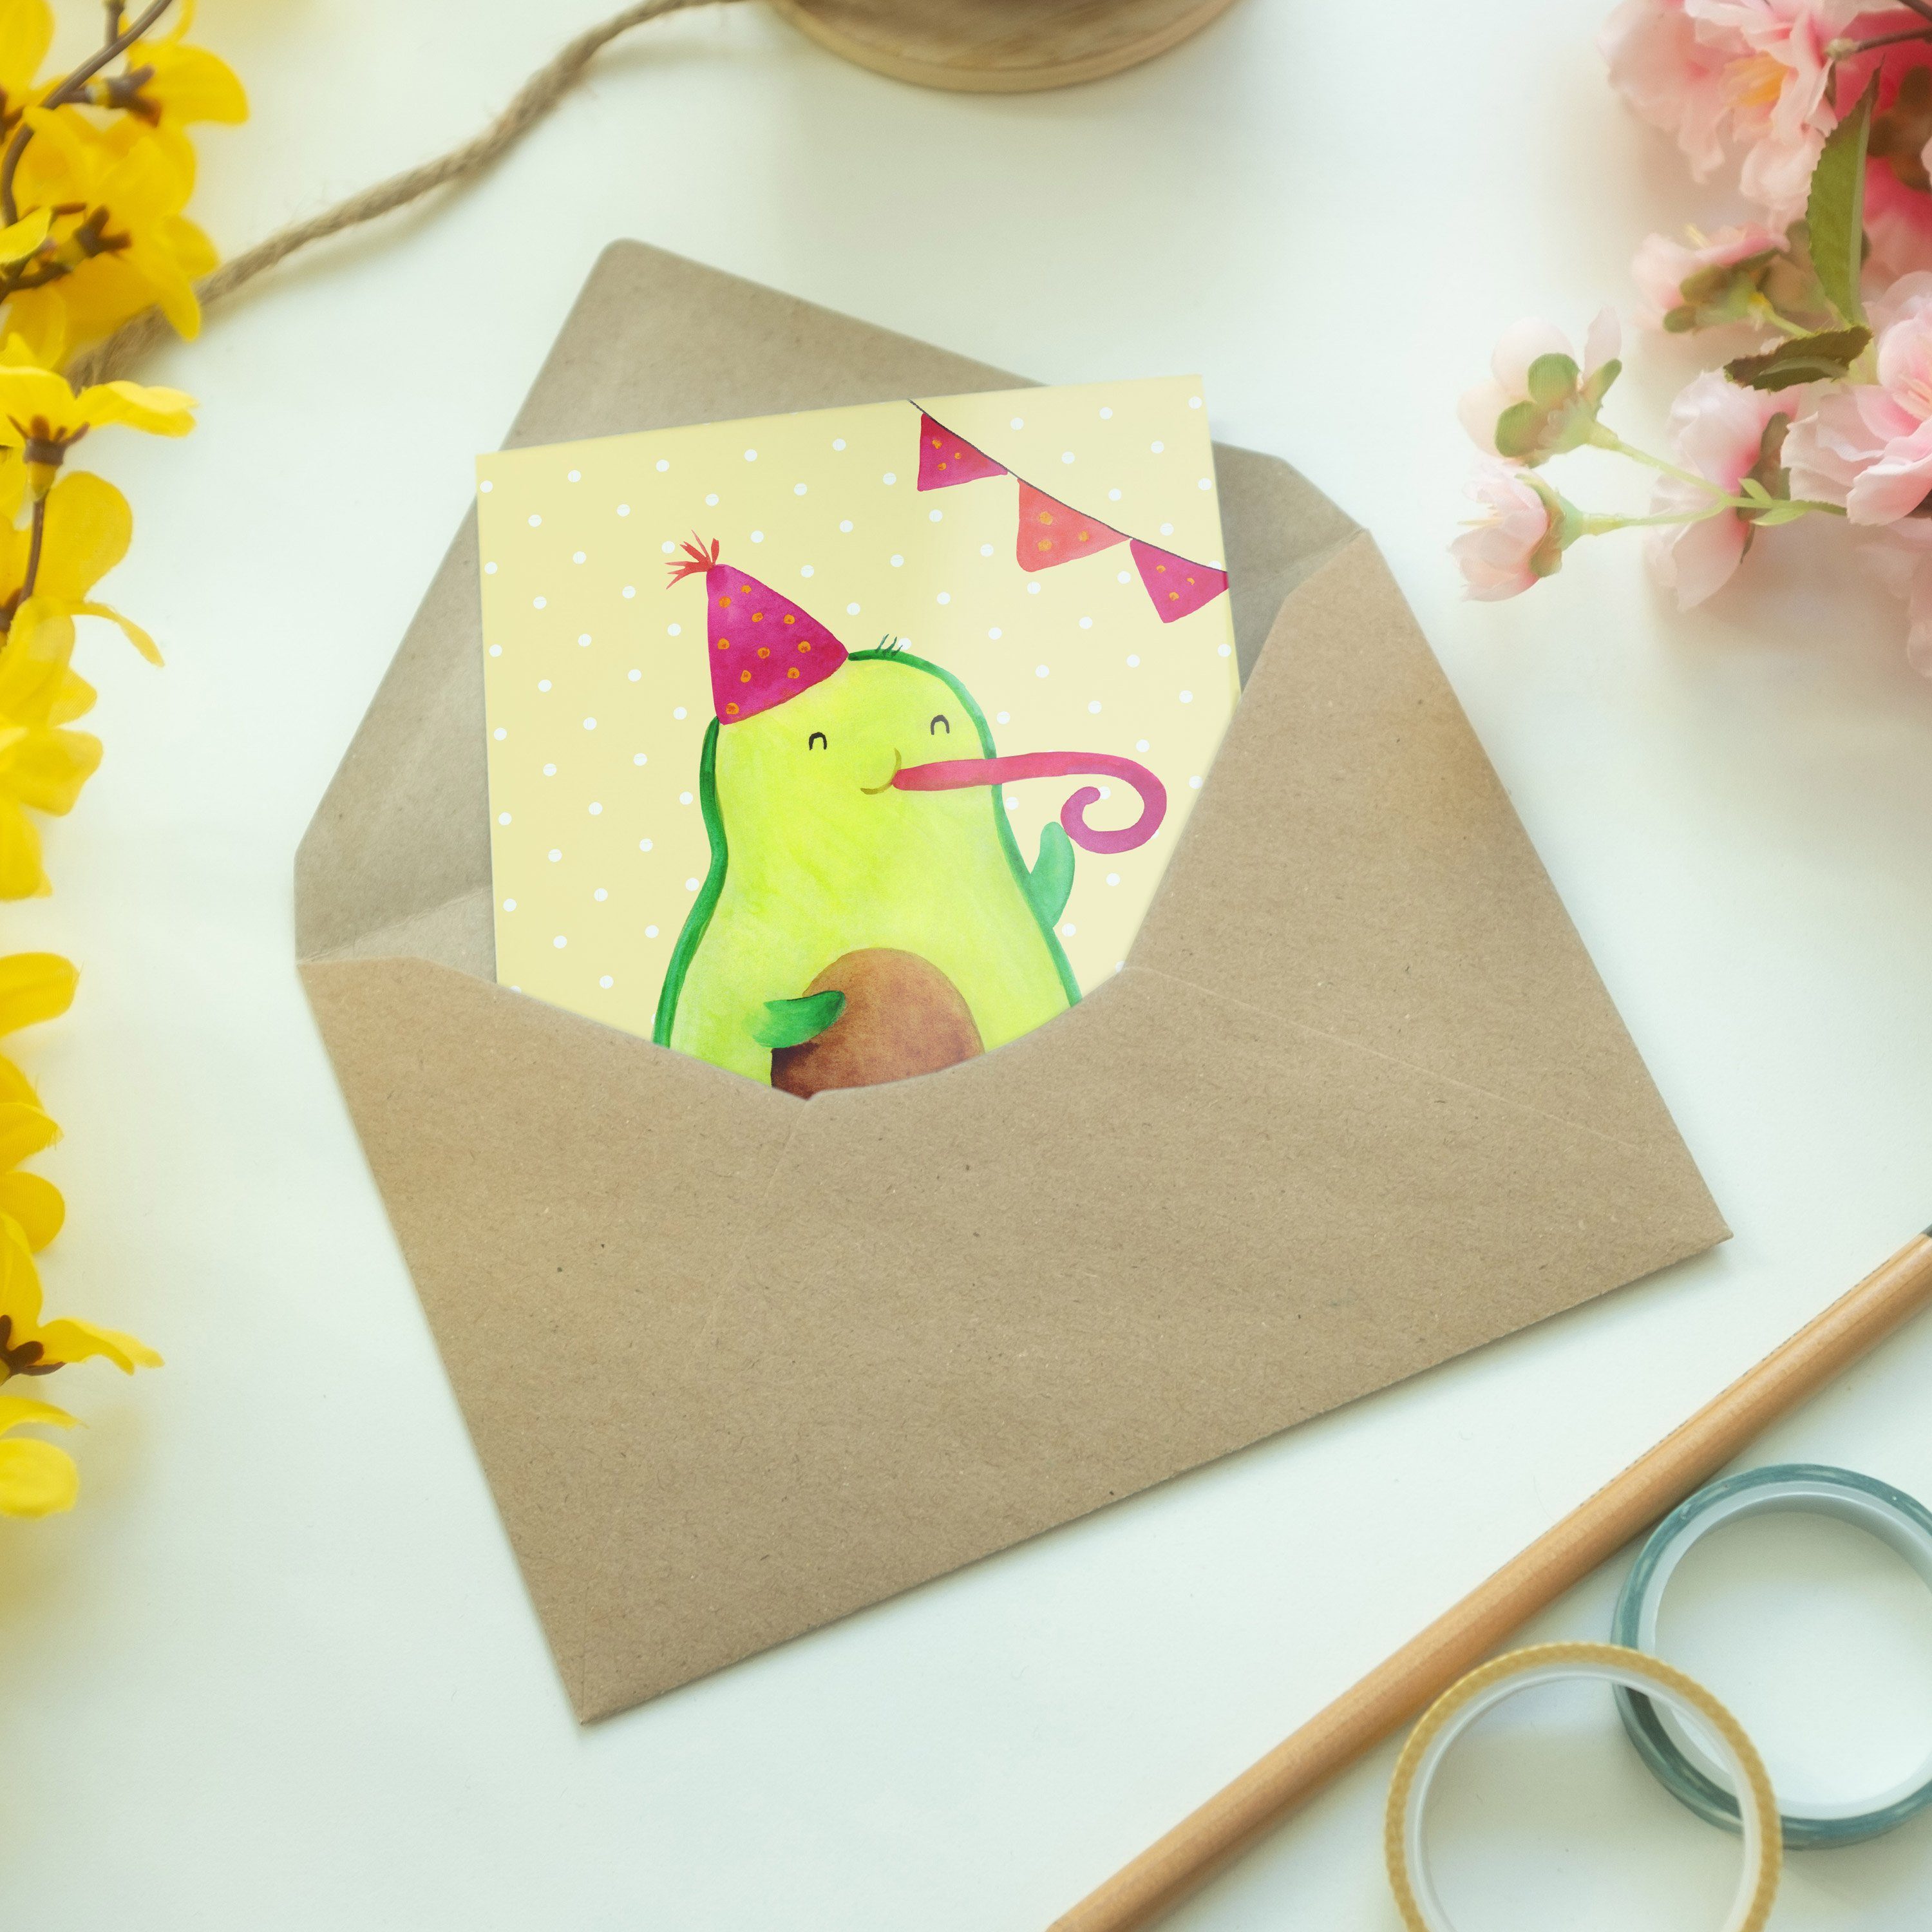 Mr. & Panda Mrs. Geschenk, Pastell Geburtstagskarte Gelb - Avocado Frucht, Birthday Grußkarte 